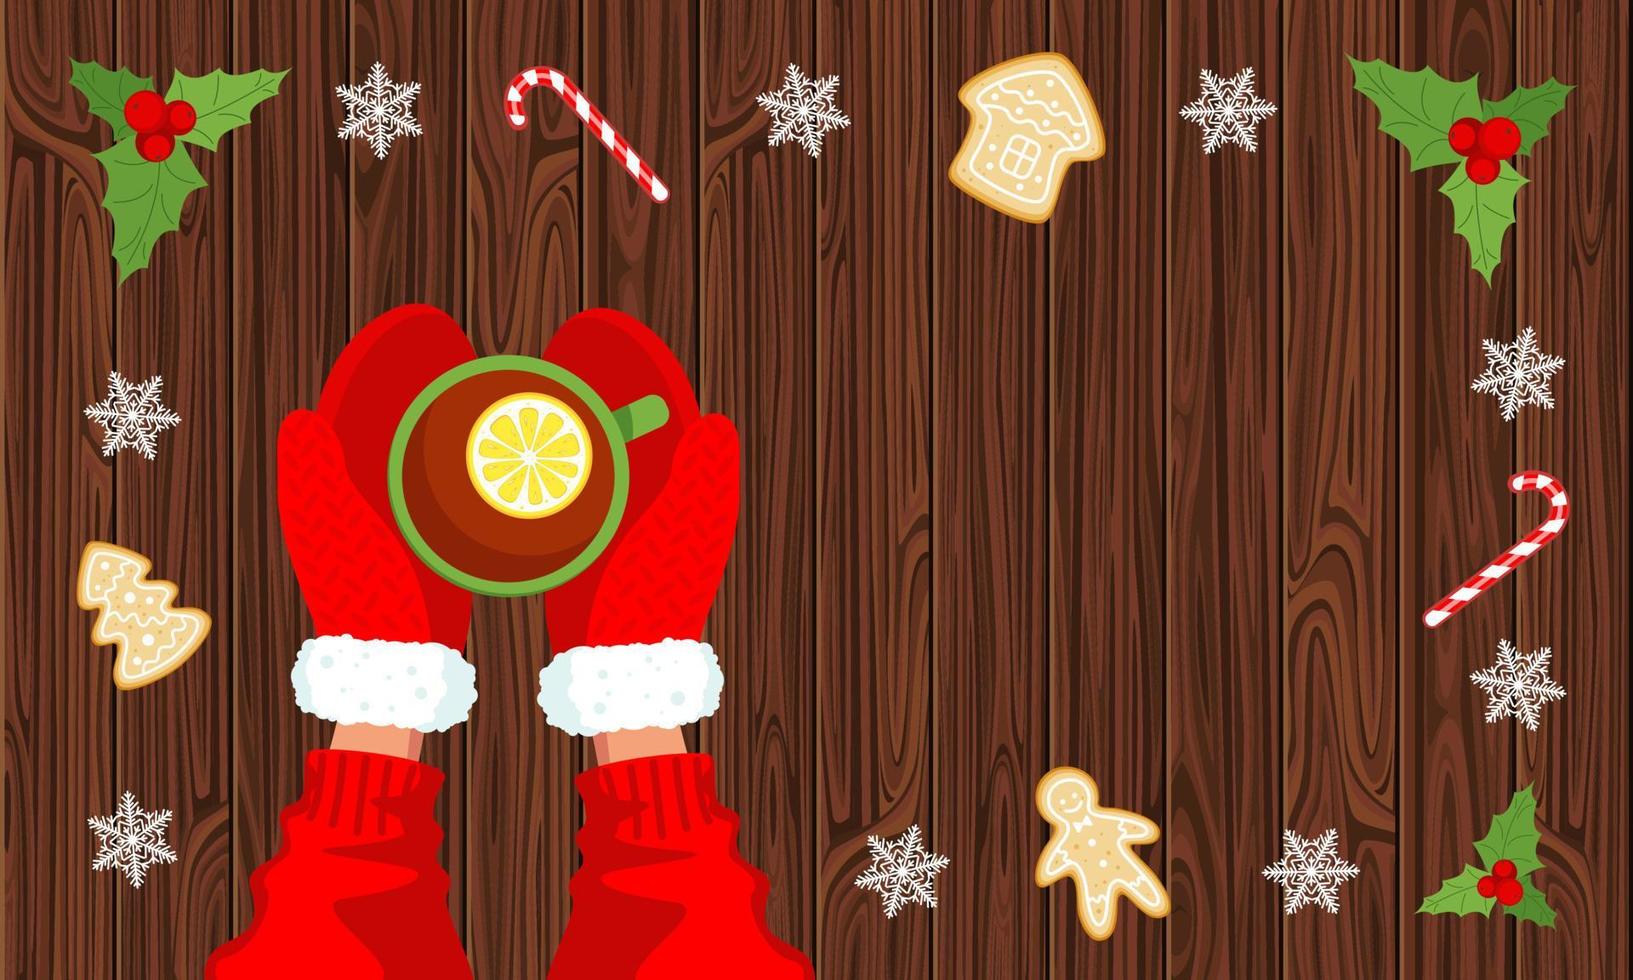 té con limón y manos en mitones rojos sobre una vista superior de fondo de madera, piruletas y pan de jengibre.concepto de año nuevo de invierno y comodidad navideña.ilustración vectorial de stock. vector